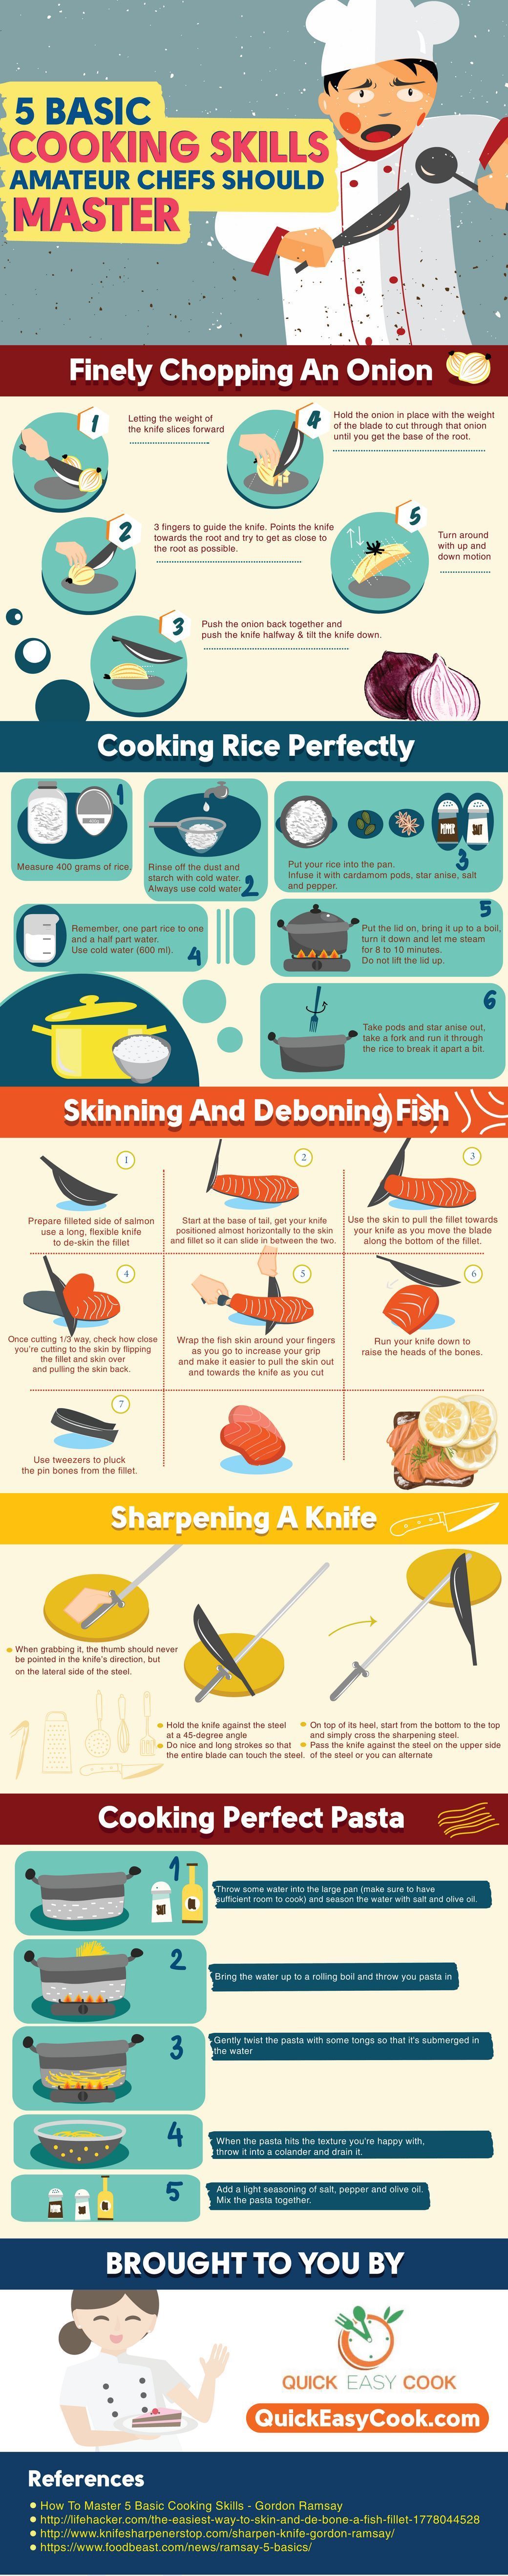 5 basic cooking skills